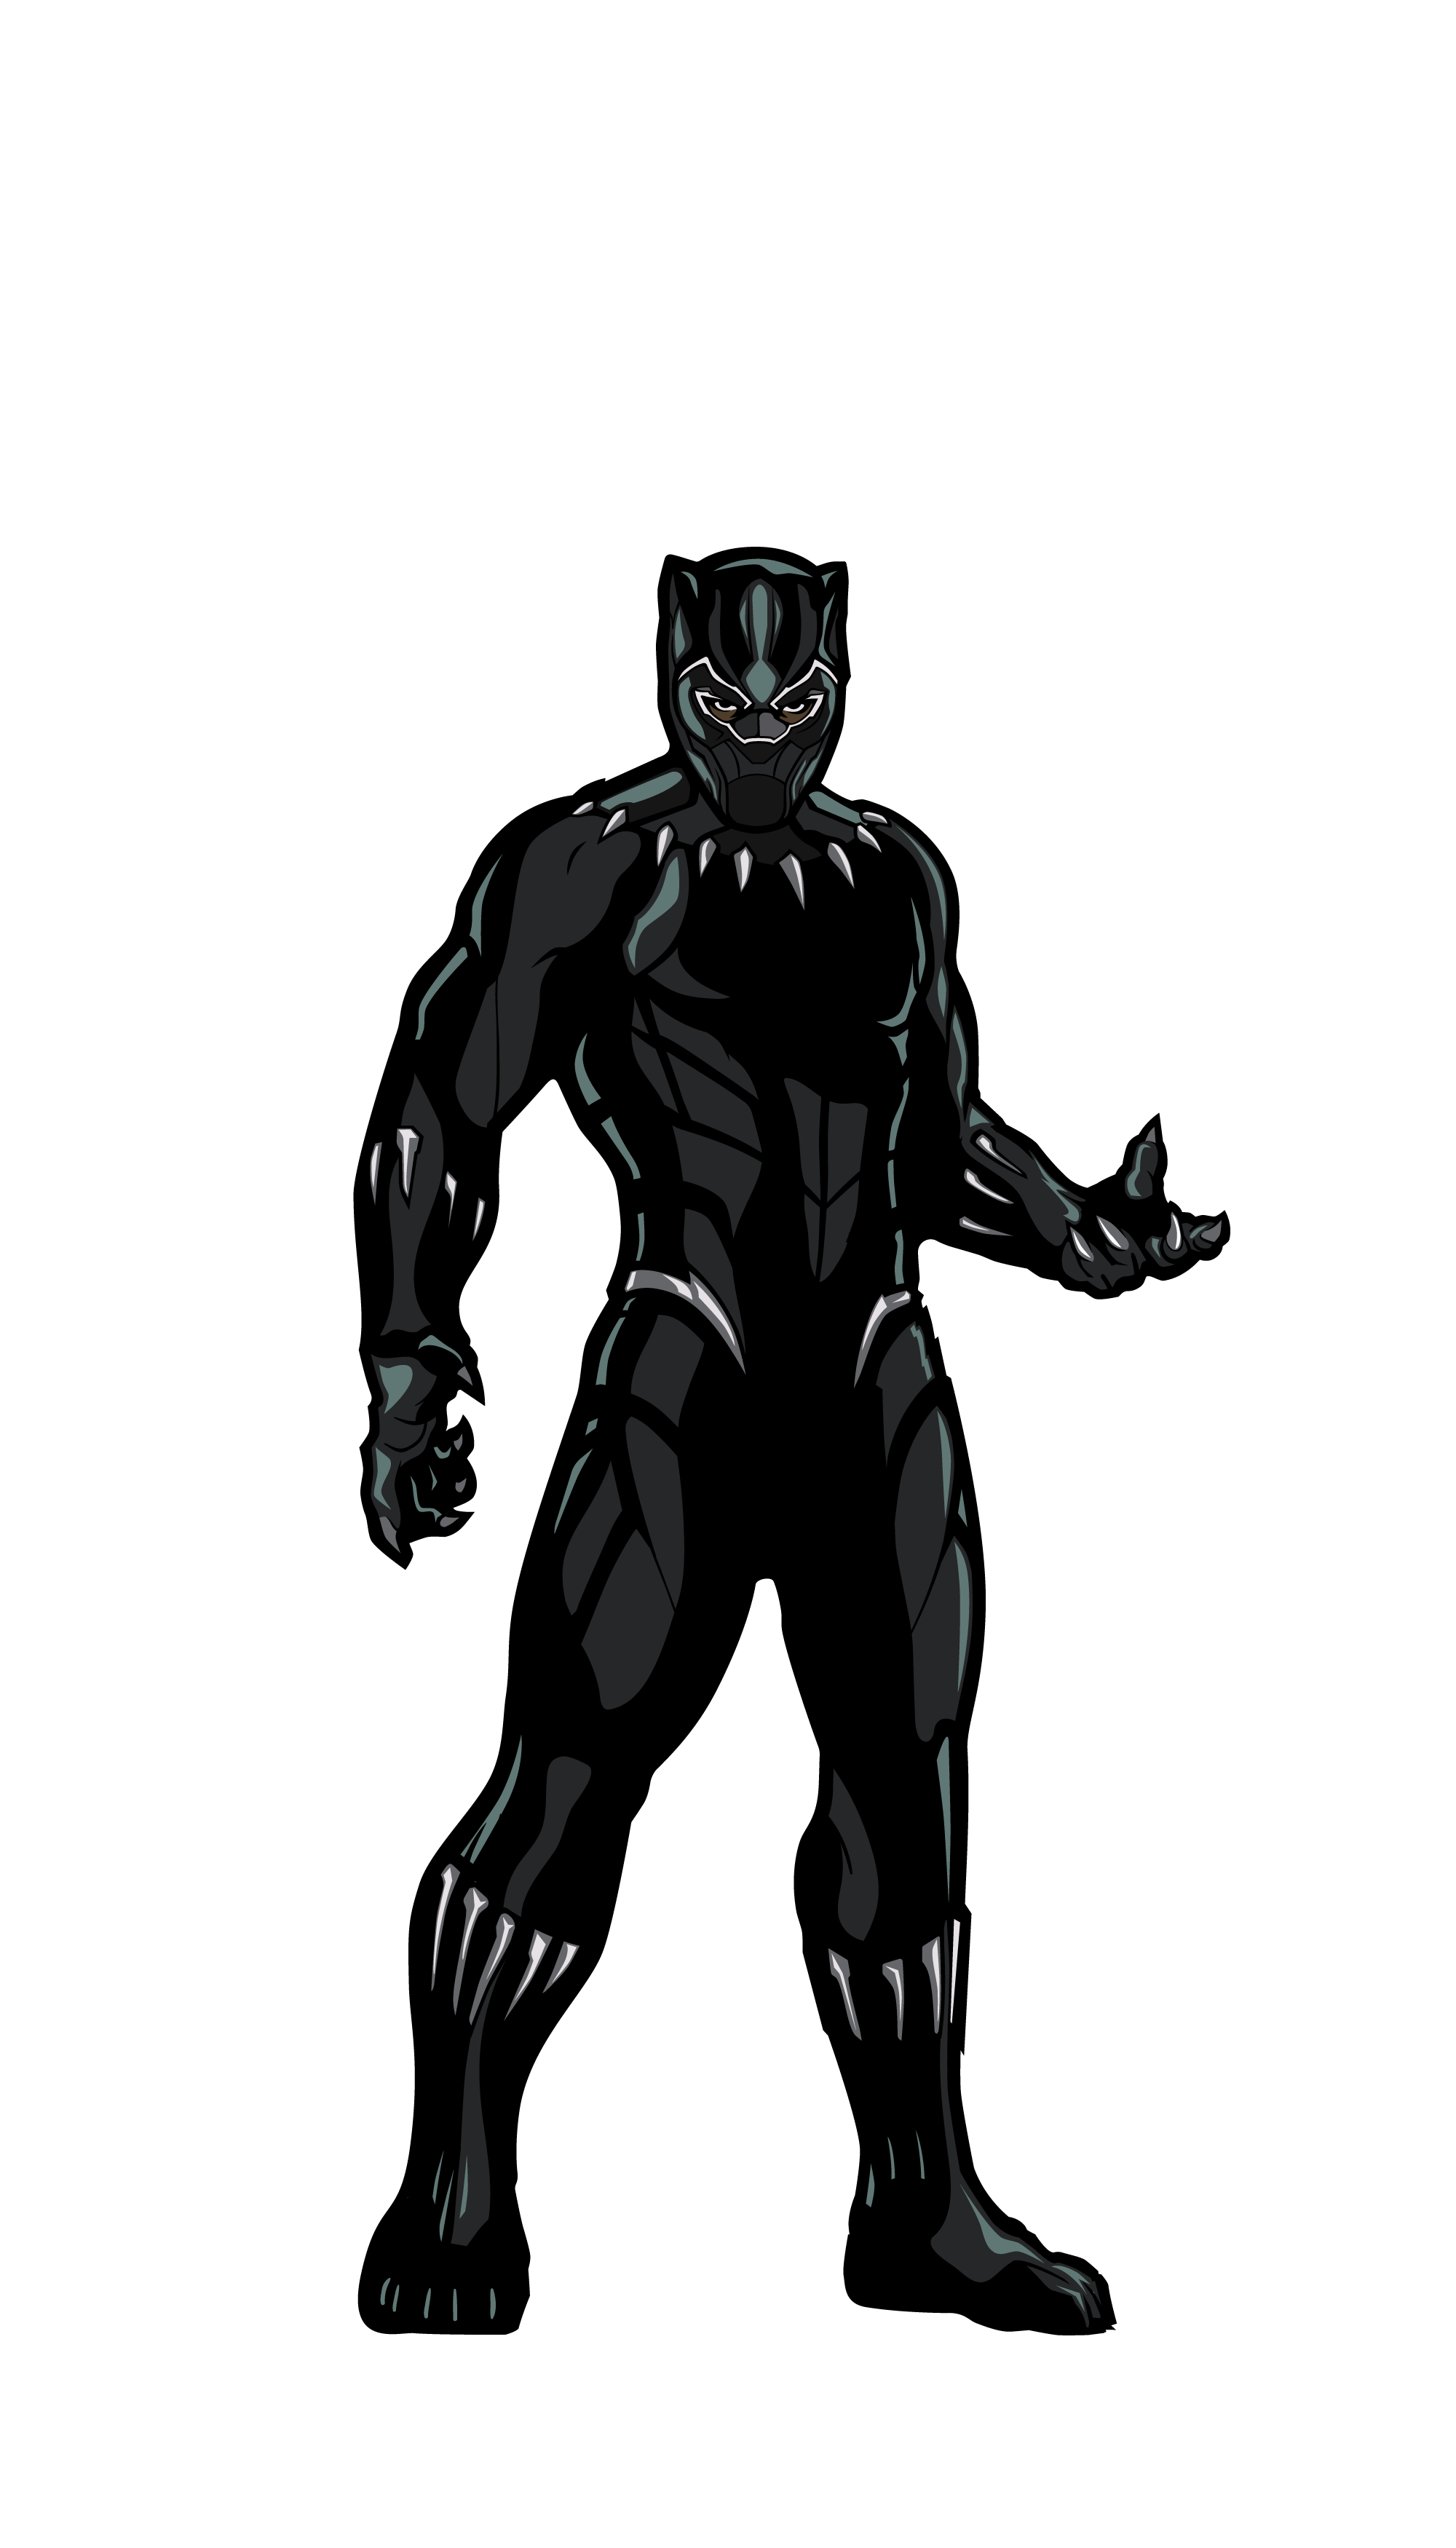 Marvel Black Panther PNG высококачественный образ